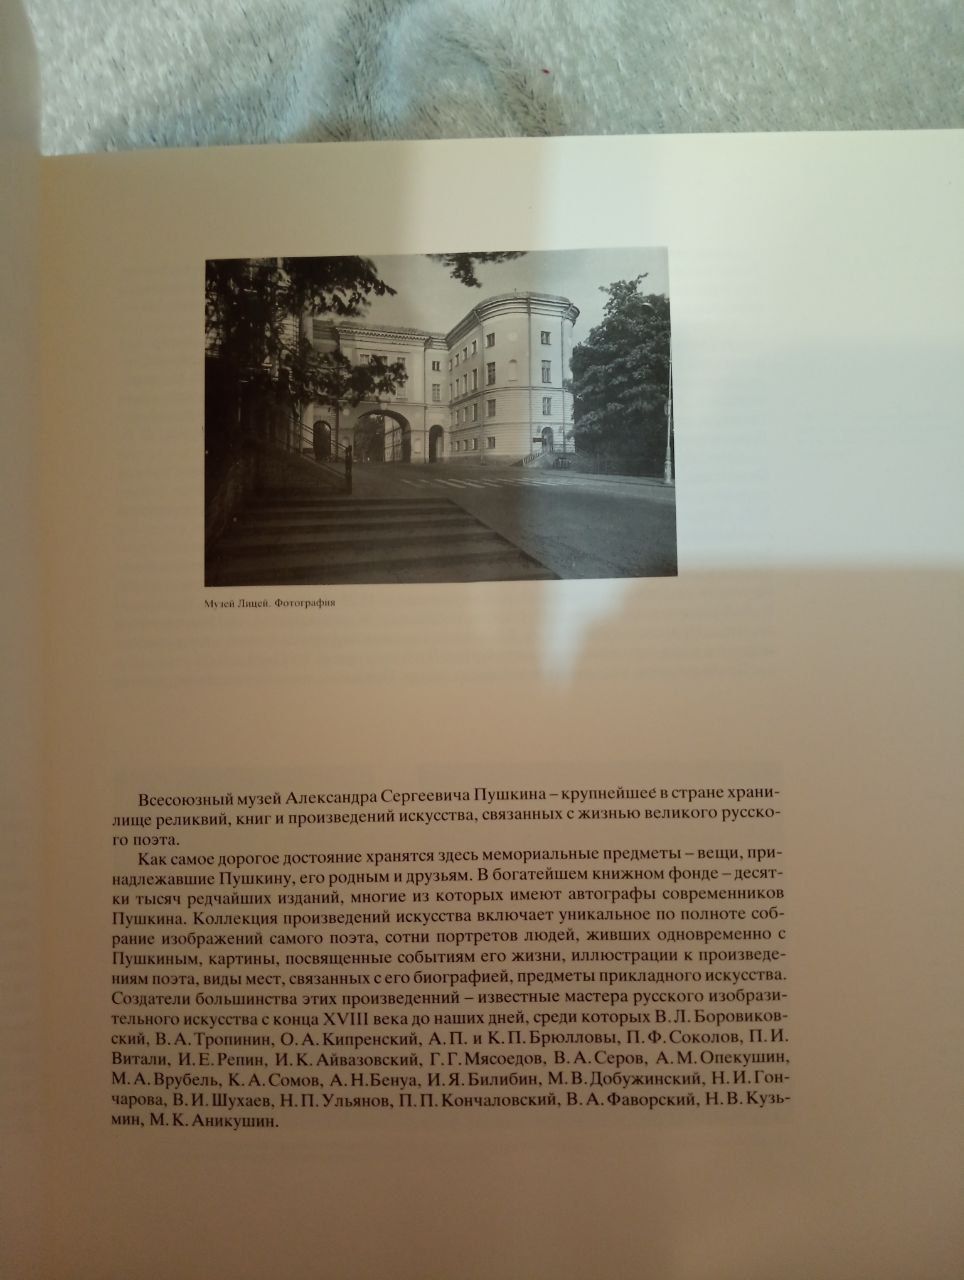 Все союзный музей.А.С.Пушкина.1987 год.